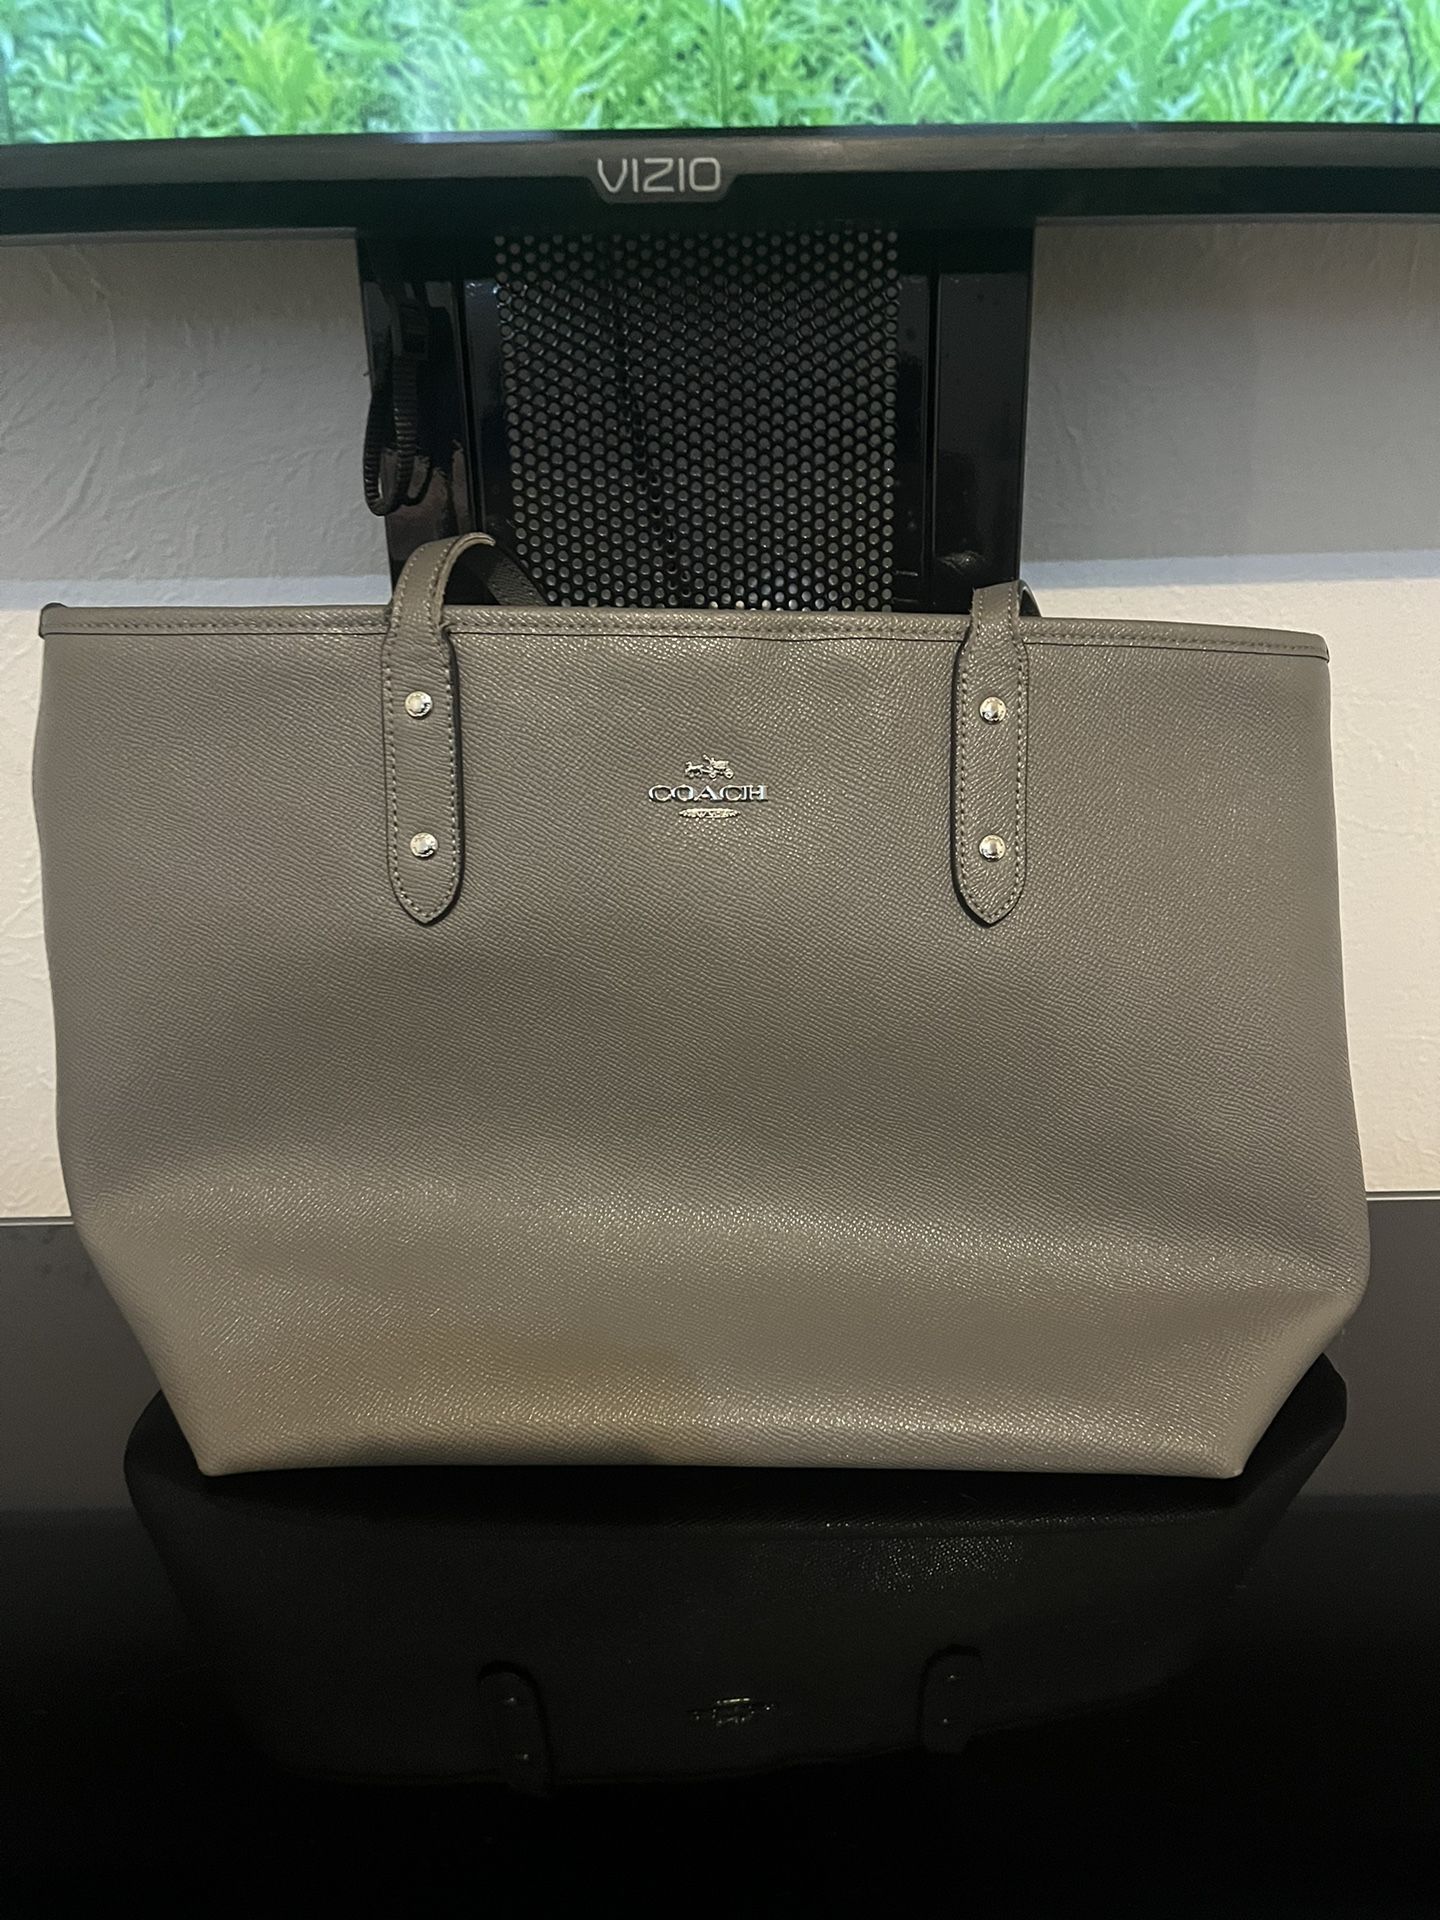 Grey coach purse